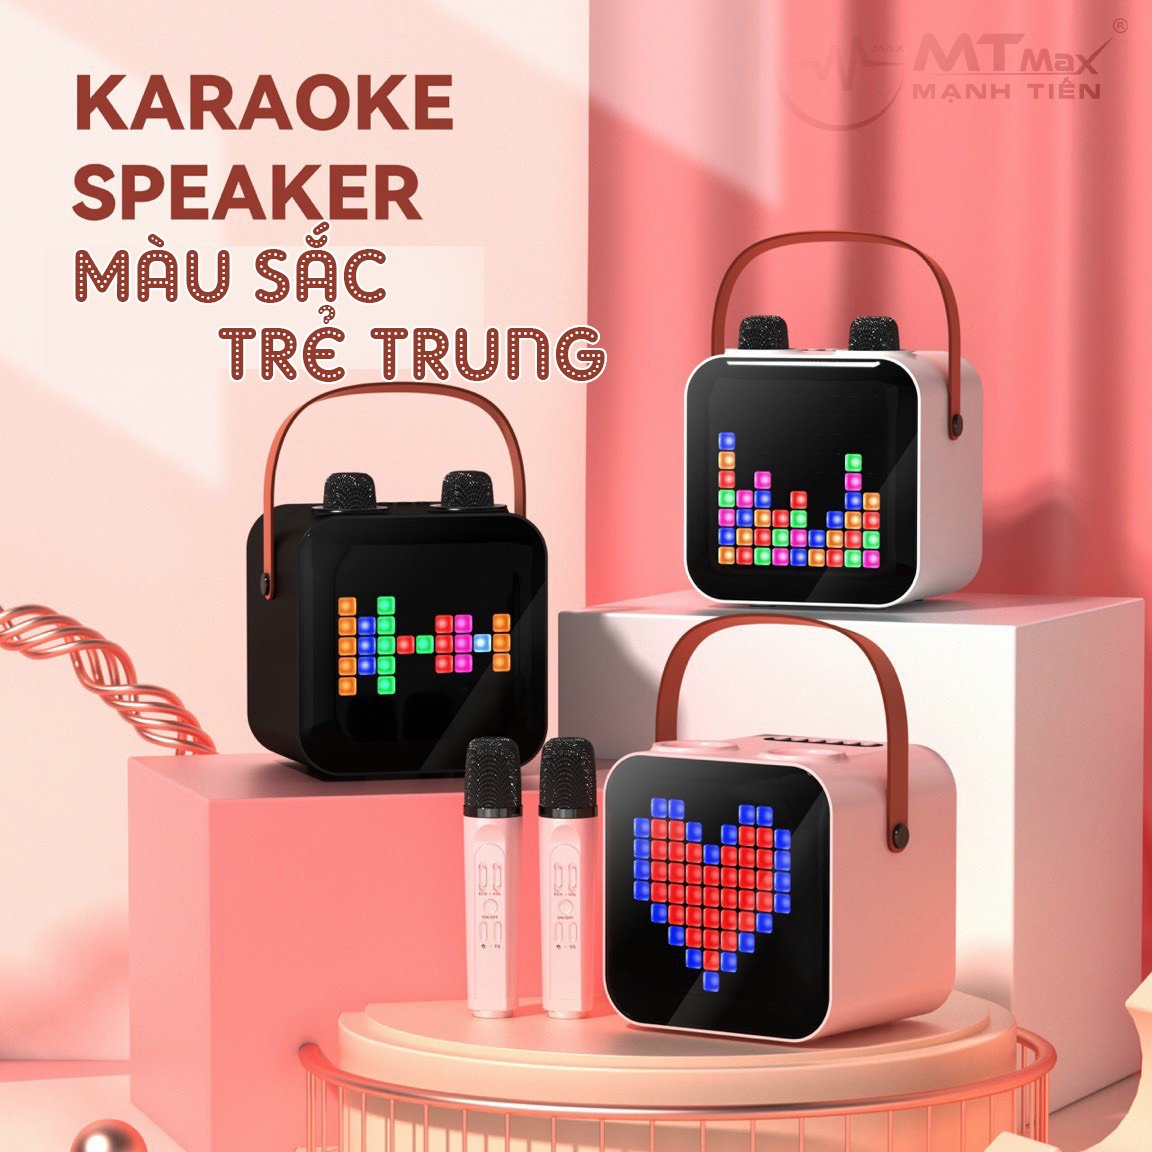 Loa Bluetooth Không Dây karaoke mini xách tay SP100 kèm 2 micro không dây có đèn led nhỏ nhắn tiện lợi phục vụ nhu cầu ca hát mọi lúc mọi nơi bảo hành 12 tháng